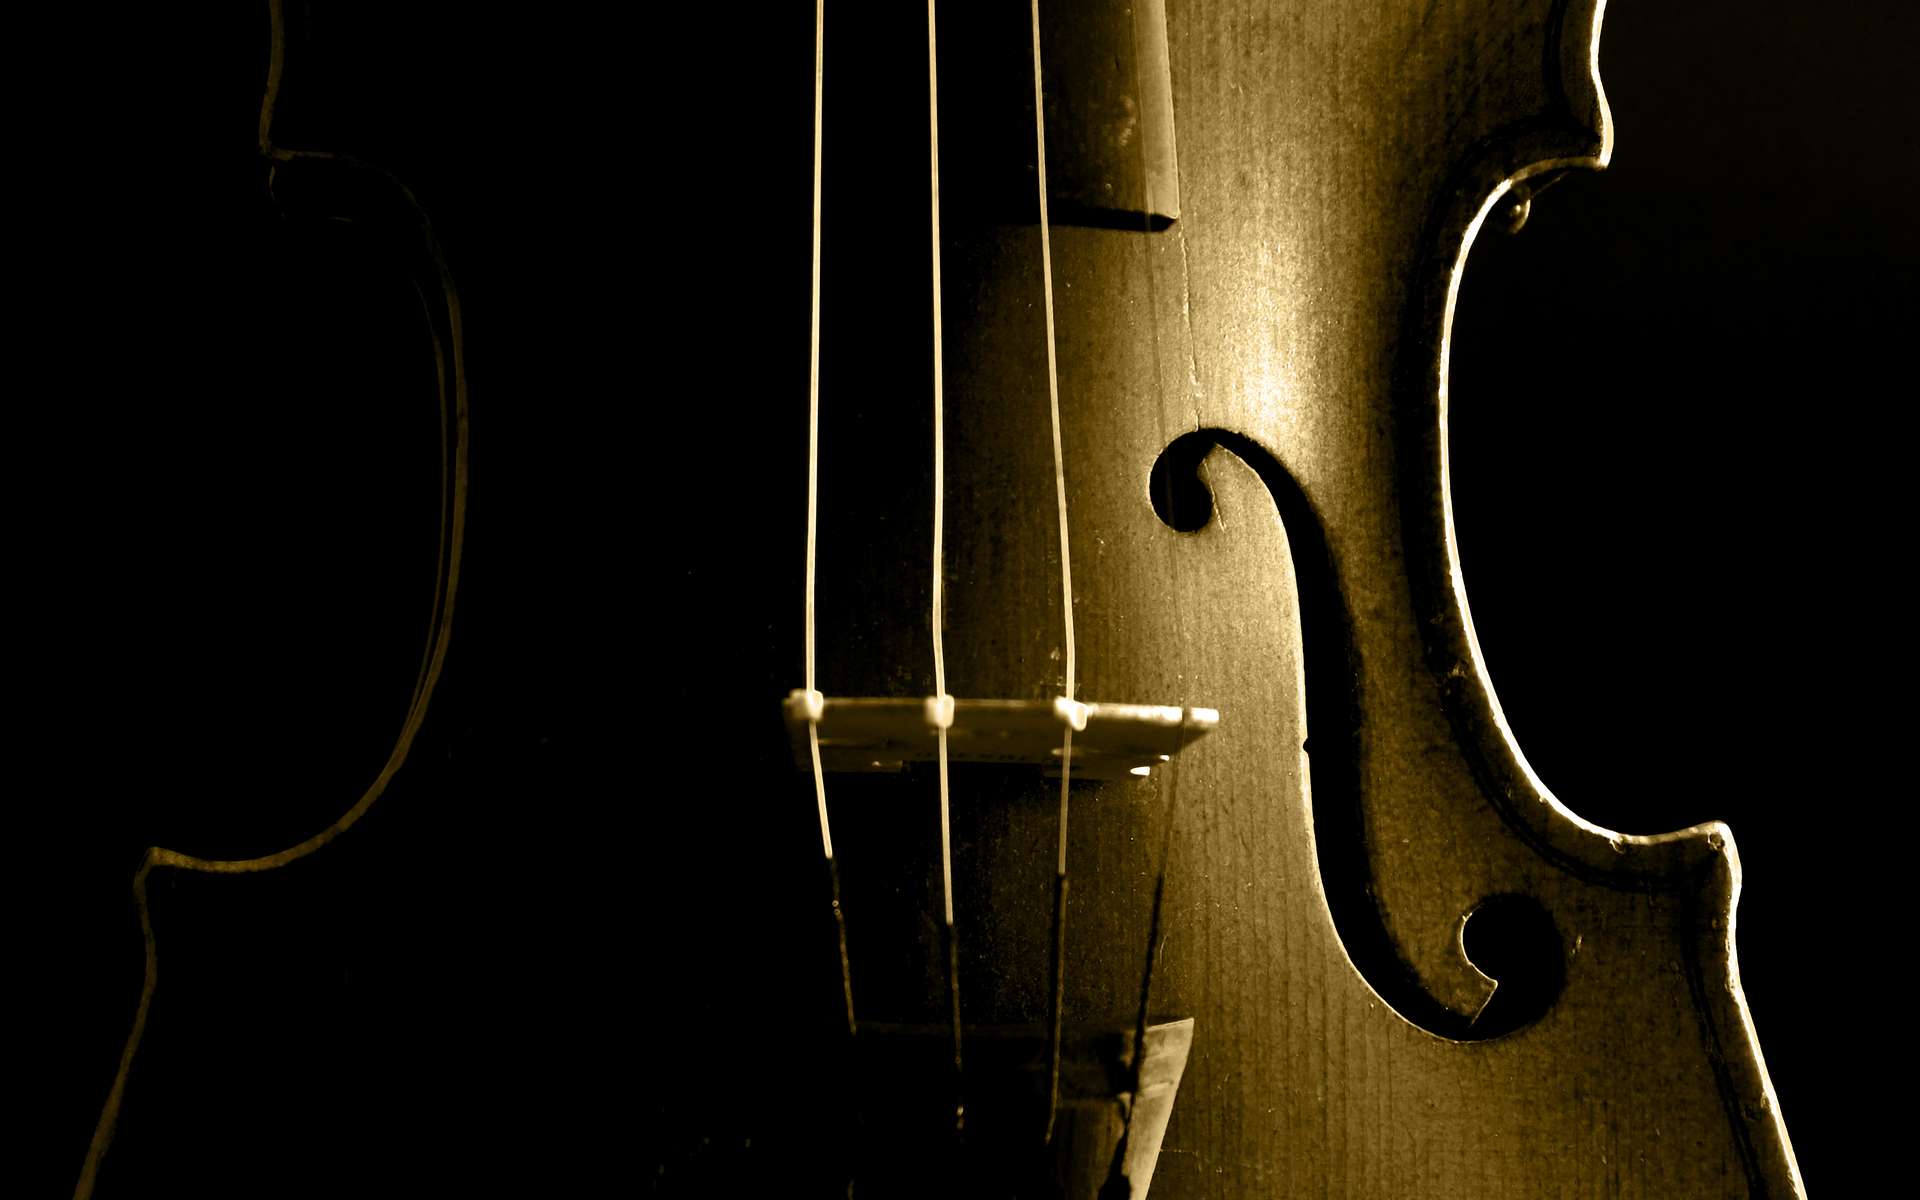 Le son inégalé du Stradivarius serait dû à des traitements particuliers de son bois. © jupiter8, Adobe Stock